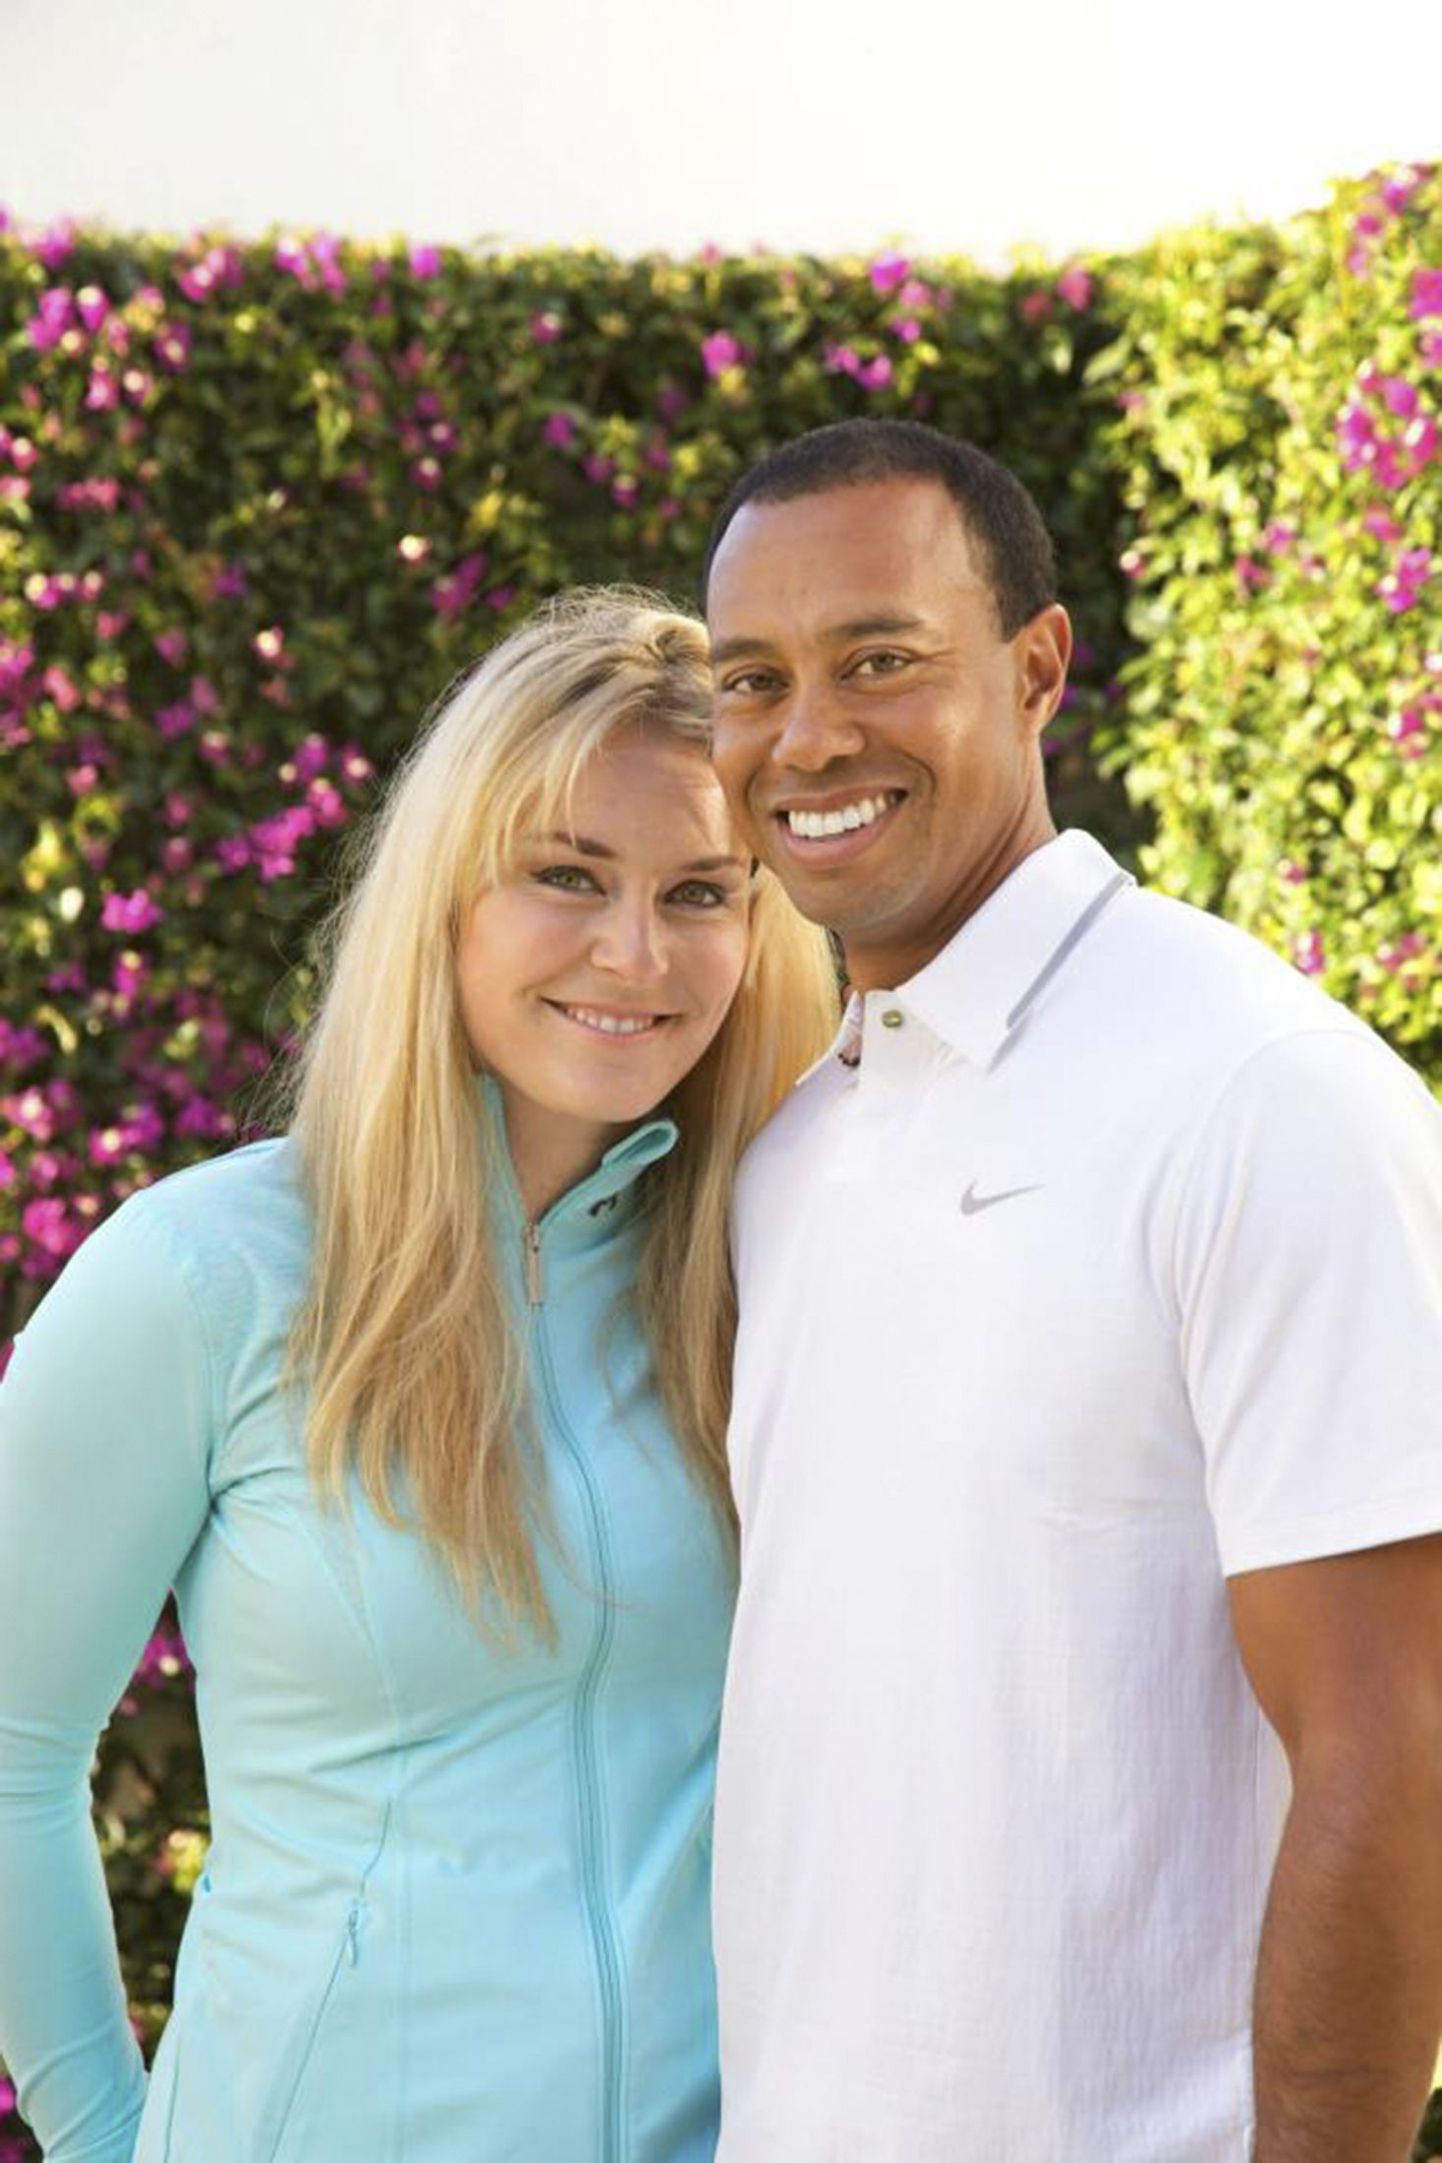 Tiger Woods ja Lindsey Vonn tegid suhte avalikuks.